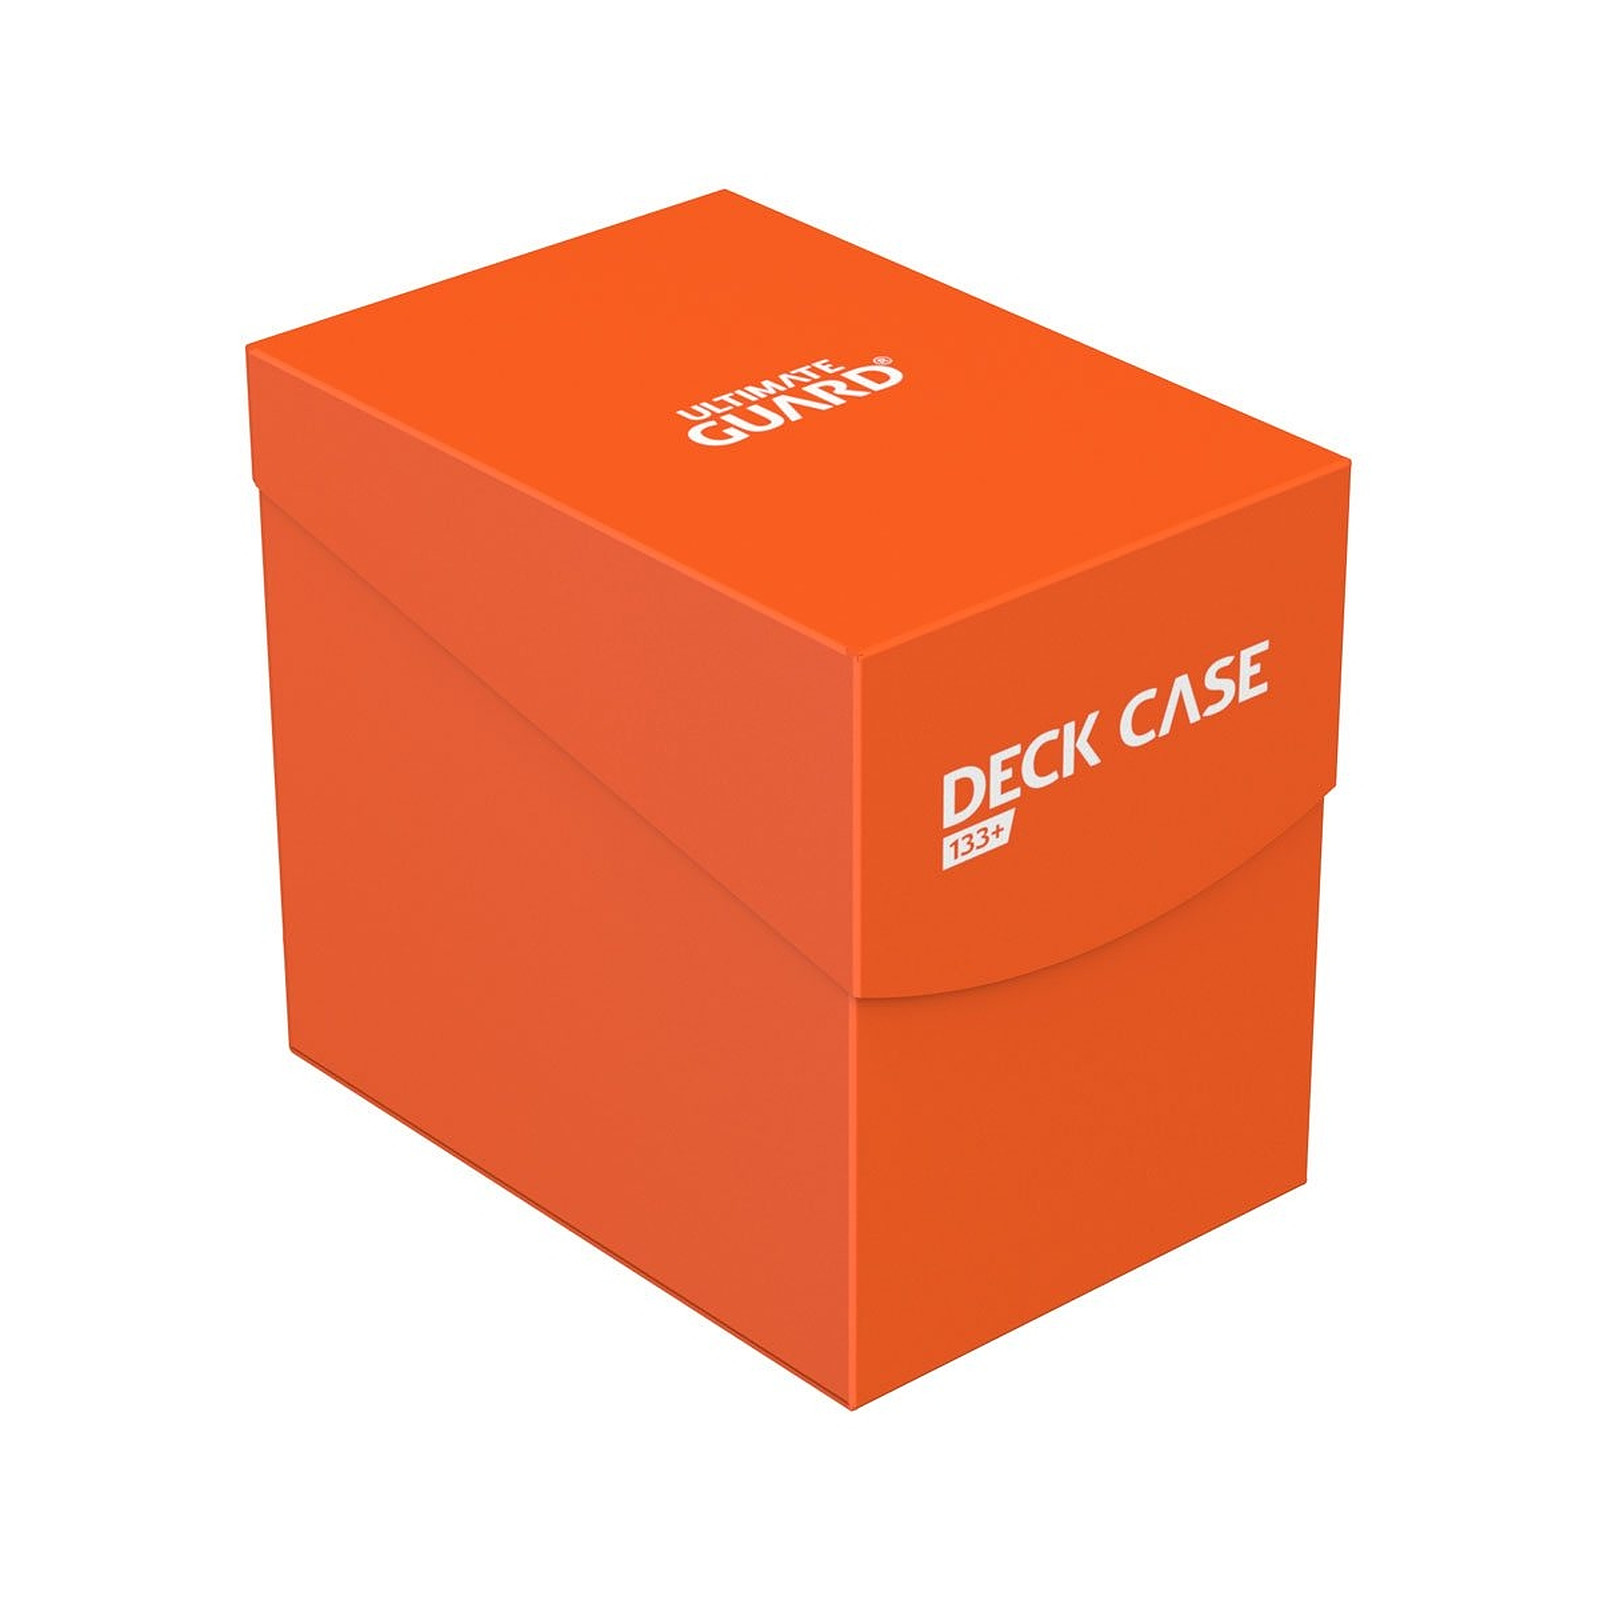 Ultimate Guard - Boite pour cartes Deck Case 133+ taille standard Orange - Accessoire jeux Ultimate Guard